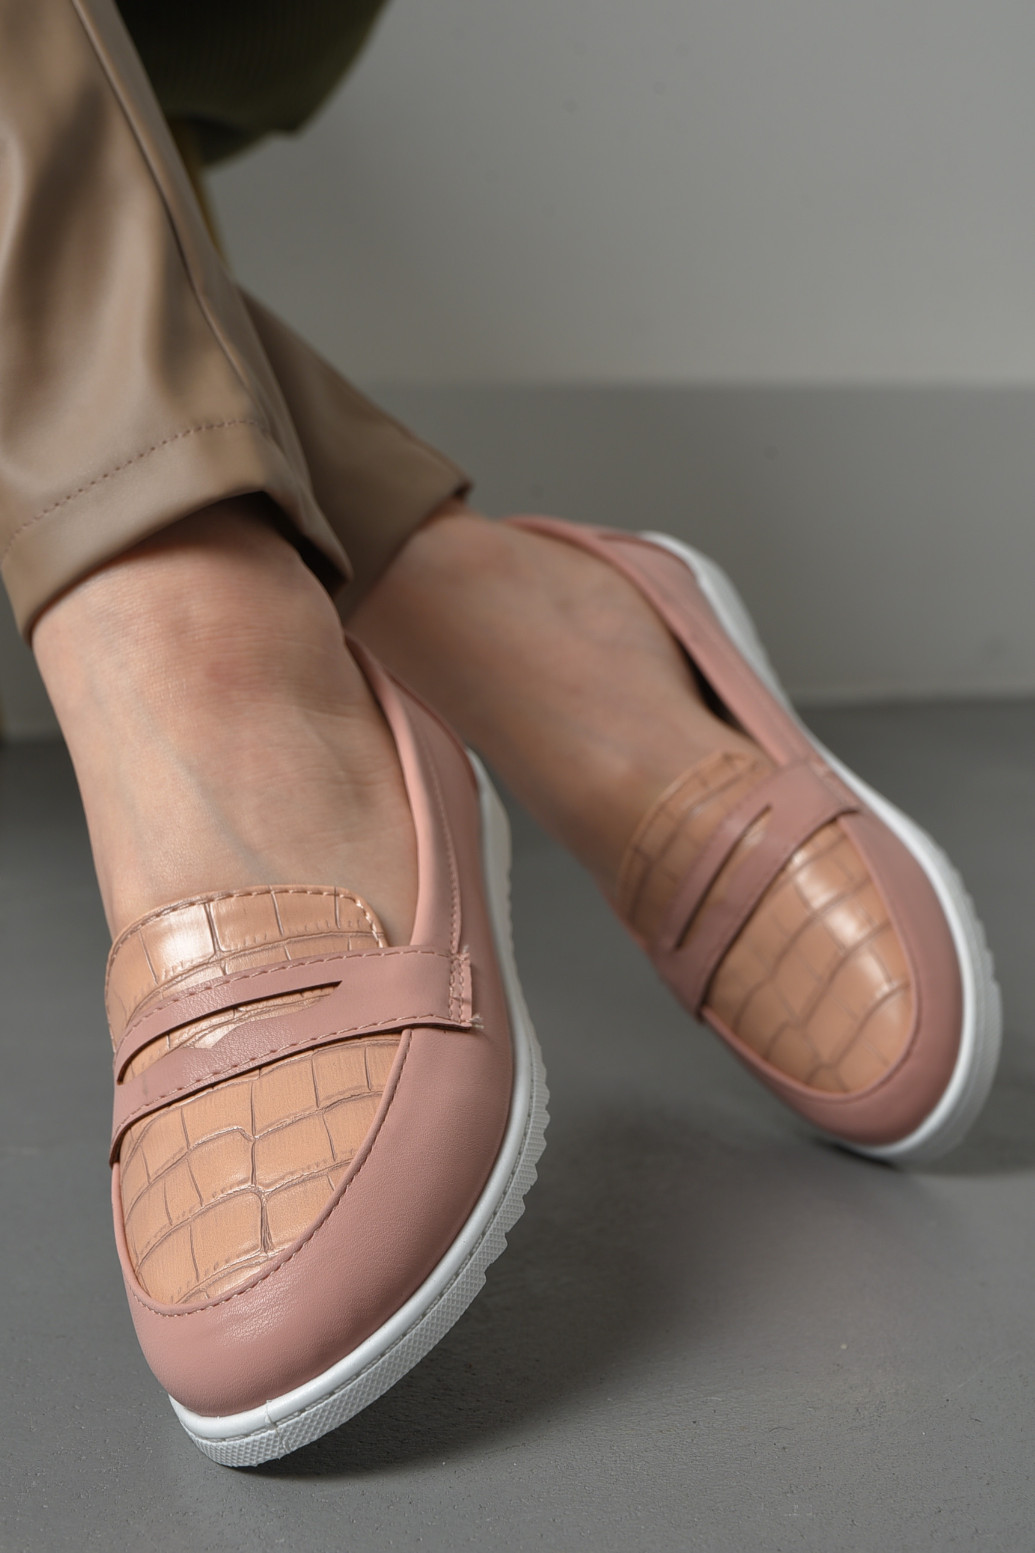 Туфли-лоферы женские розового цвета Let's Shop с цепочками